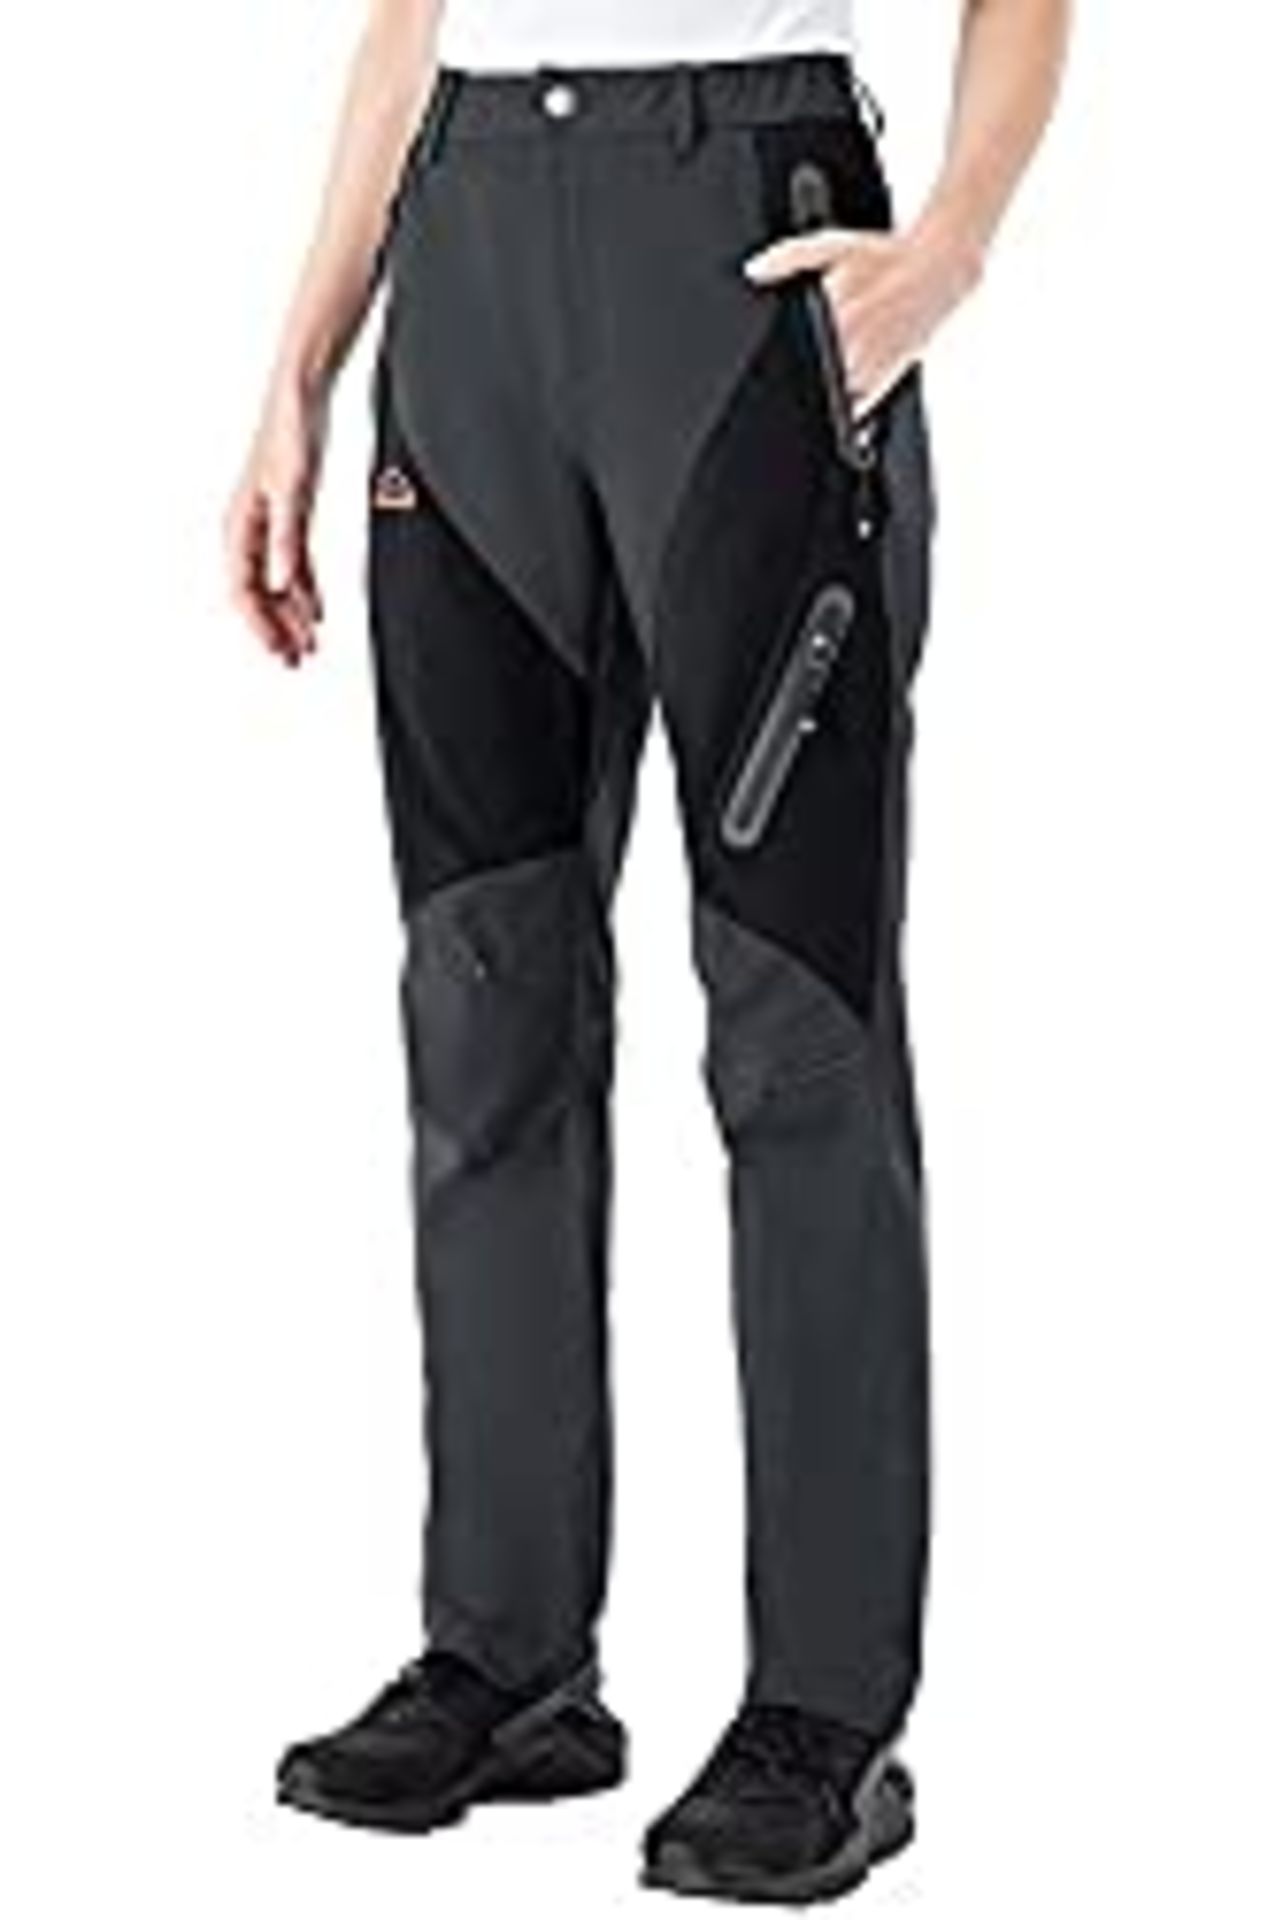 RRP £27.98 donhobo Womens Waterproof Walking Trousers Zipper Pockets